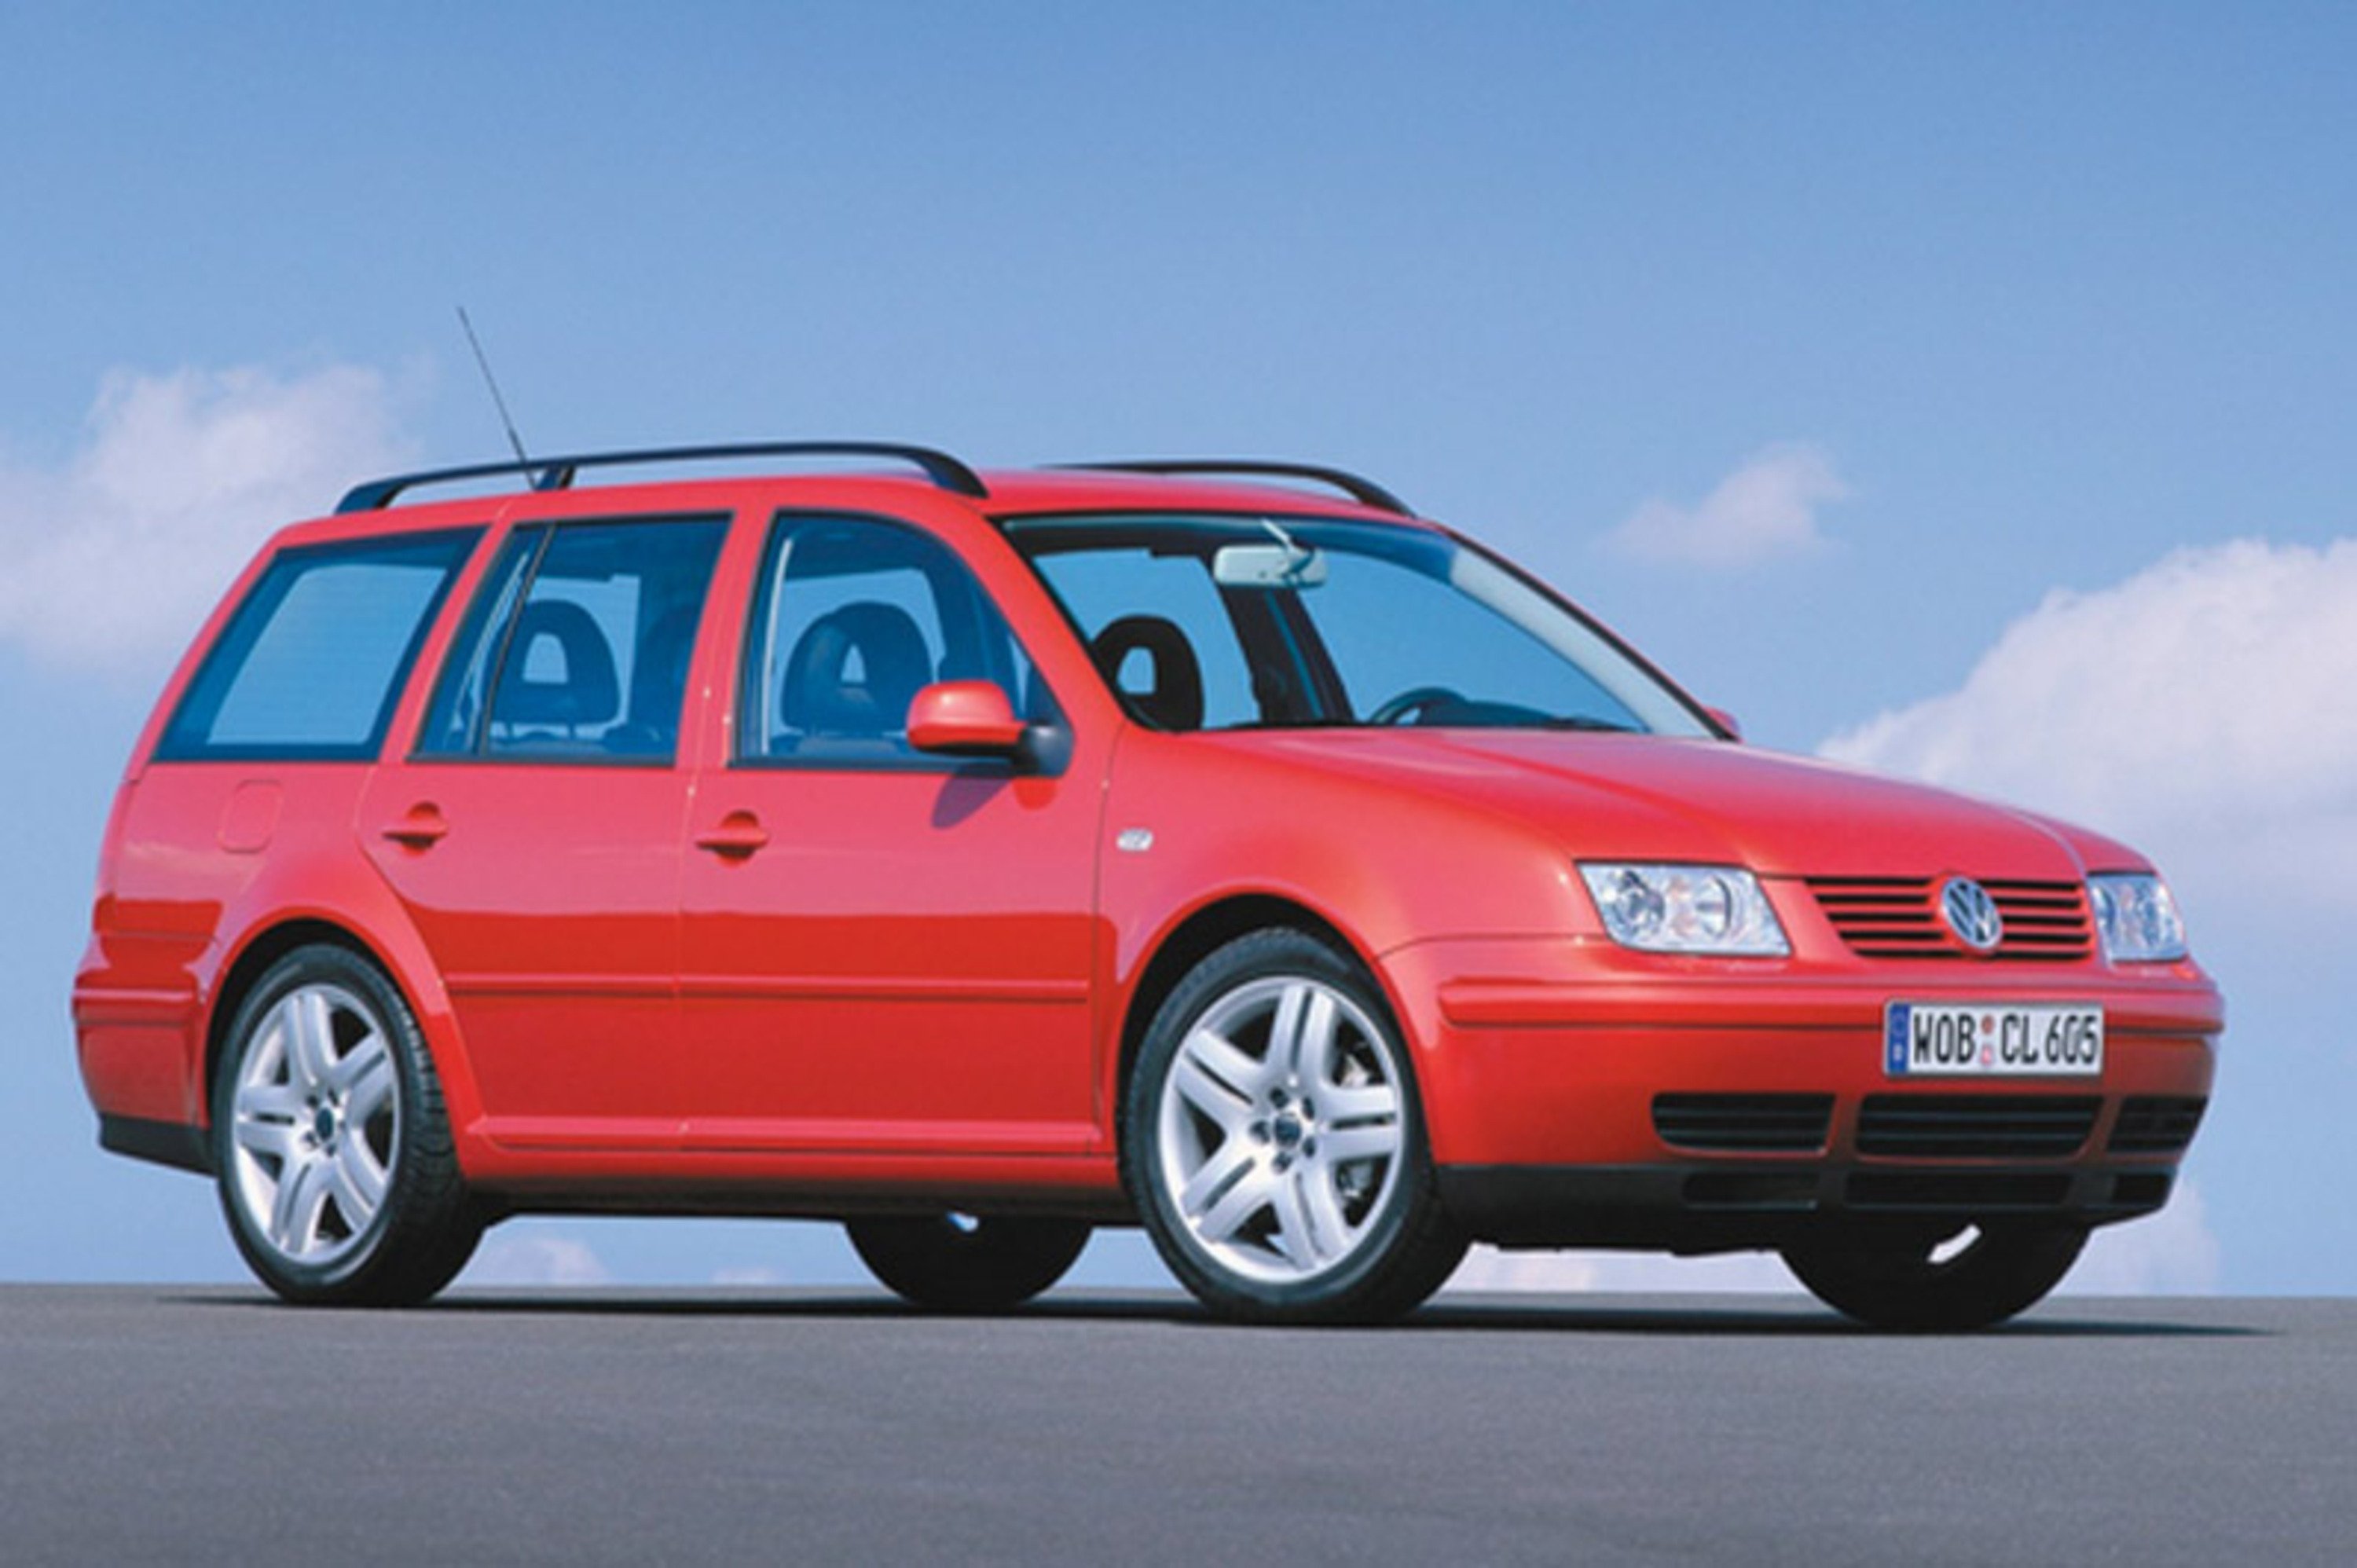 Volkswagen Bora Variant (2000-06)